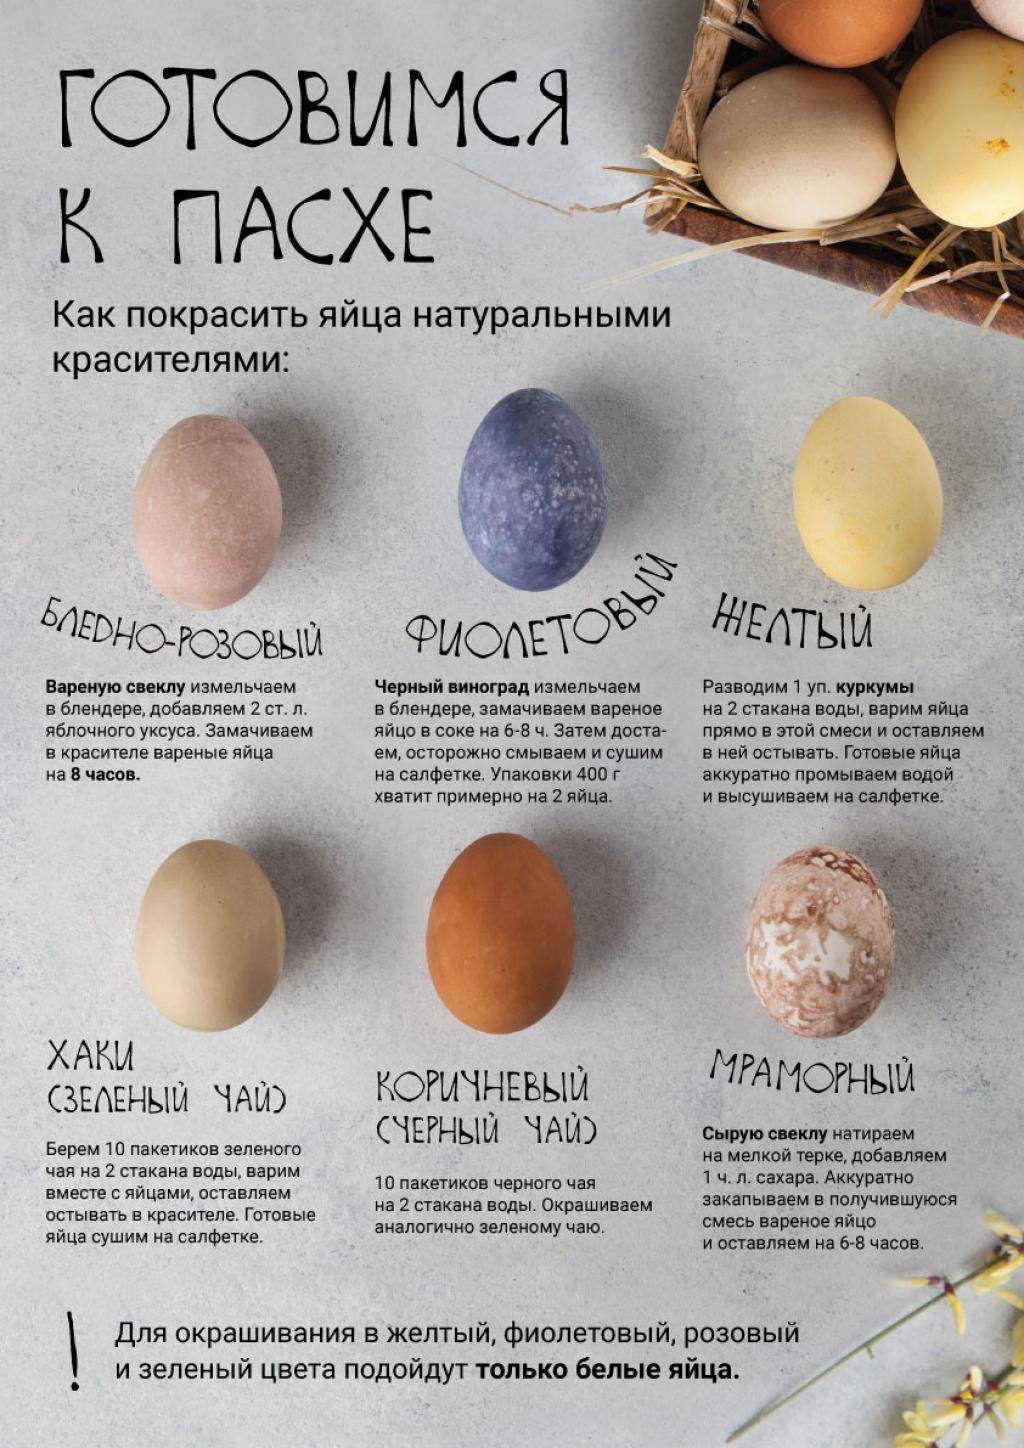 Старинные методы окрашивания яиц без краски и химии! » женский мир